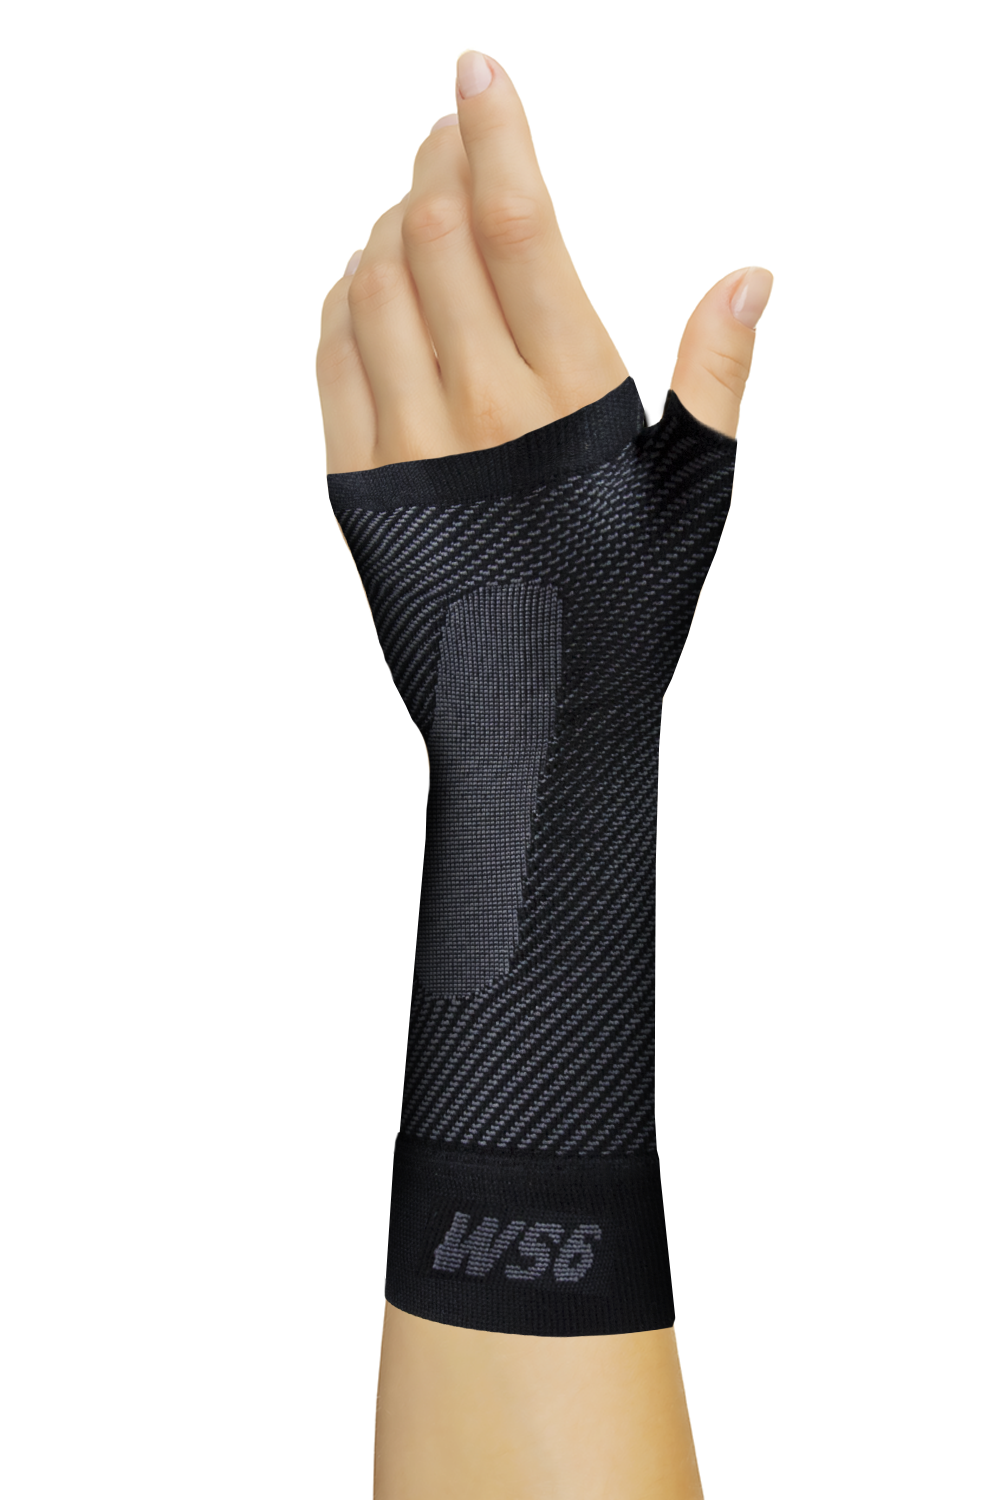 Orthosleeve Ws6 Wrist Sleeve Black Large image 0